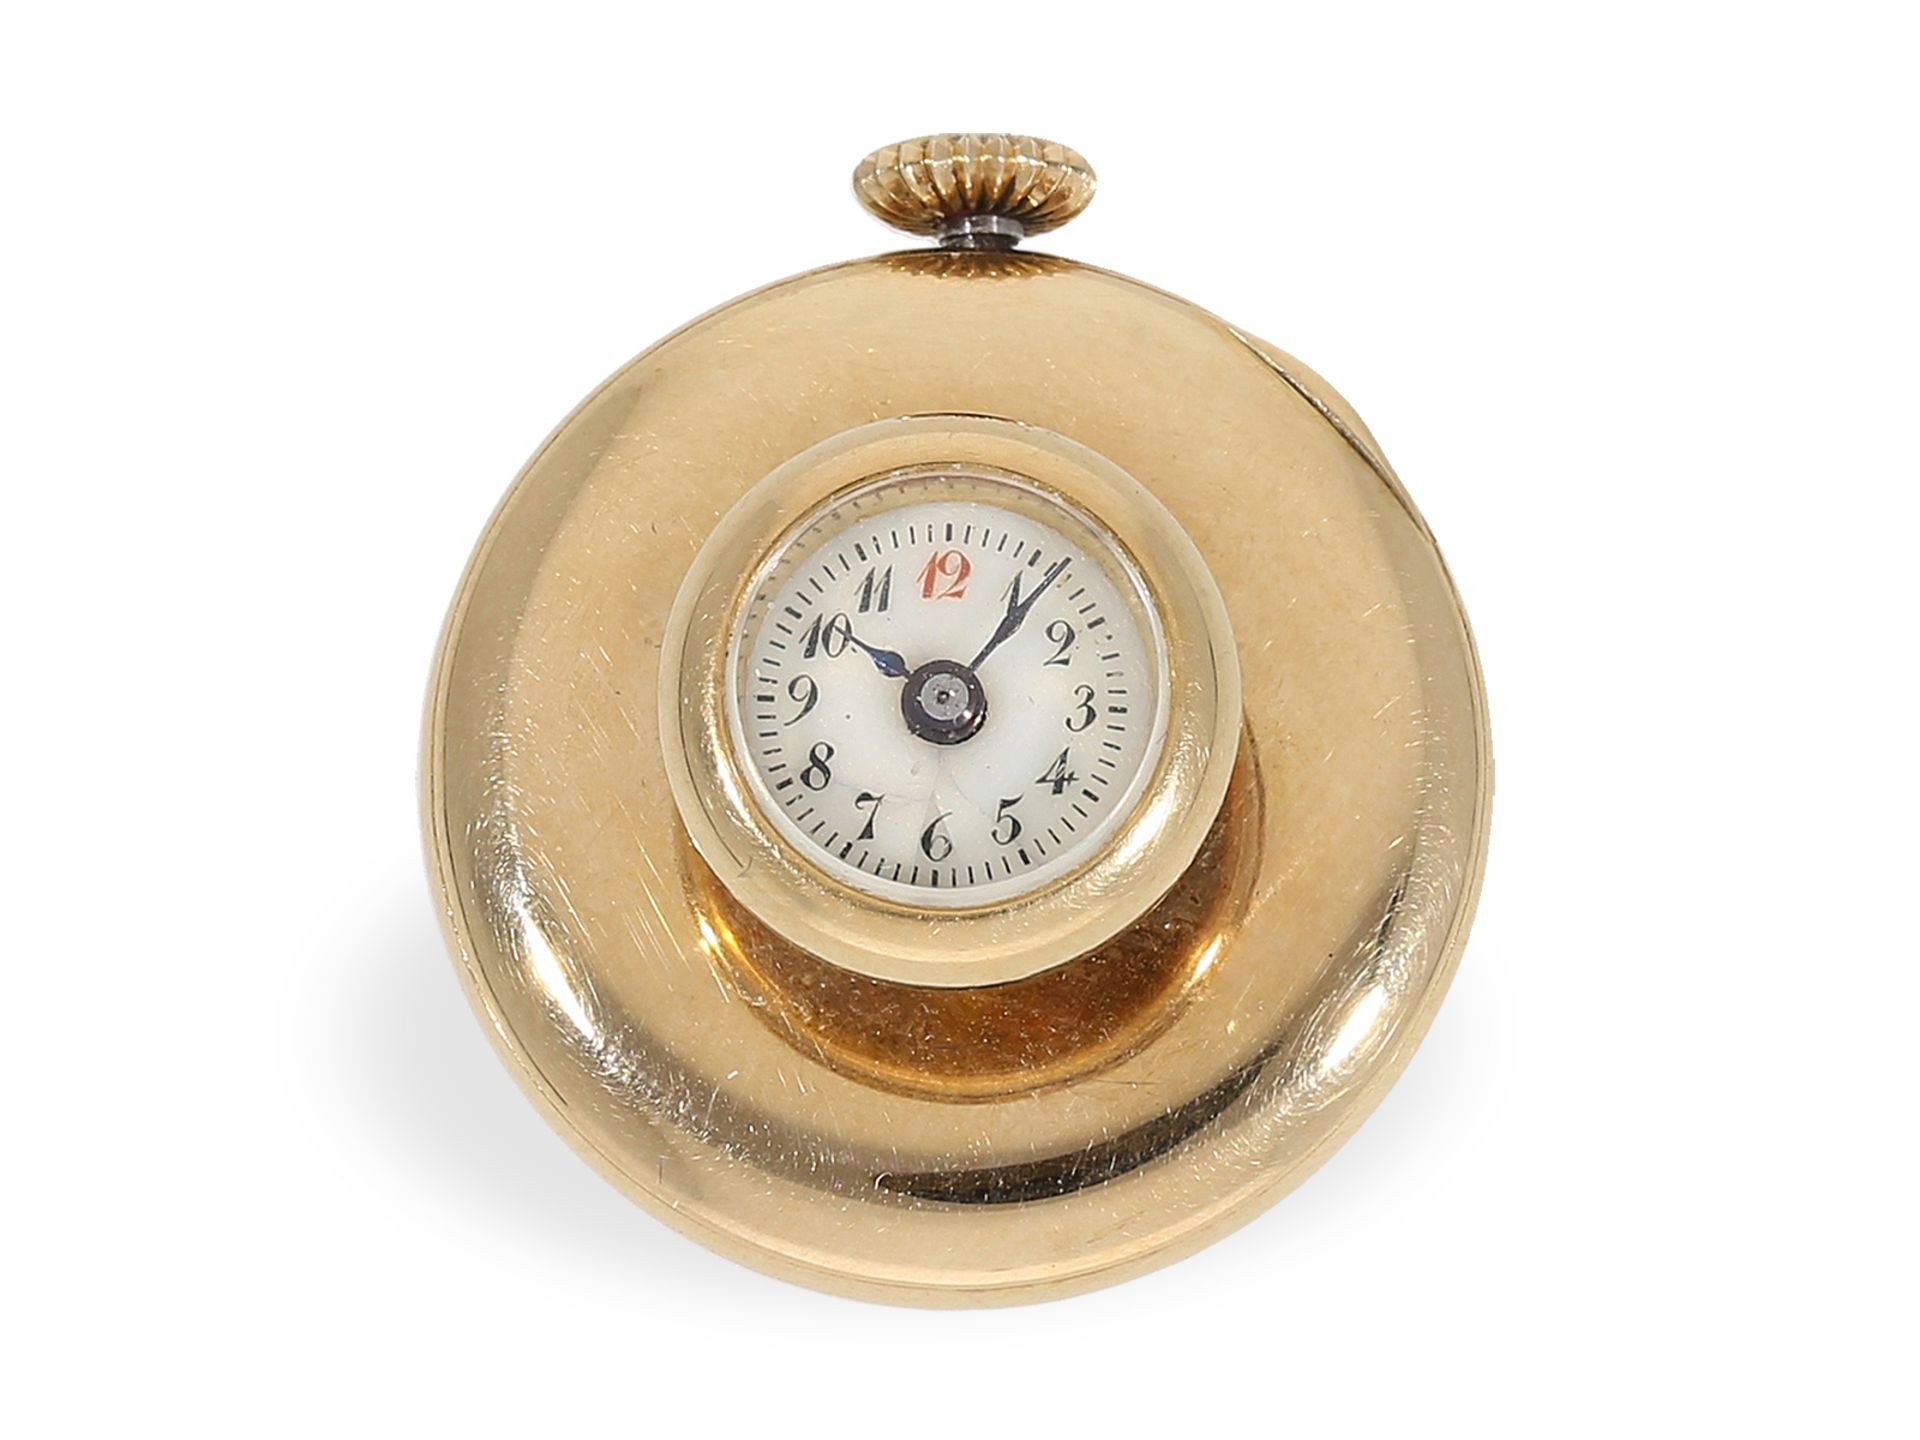 Knopflochuhr: sehr seltene Knopflochuhr in der Goldausführung, ca. 1900